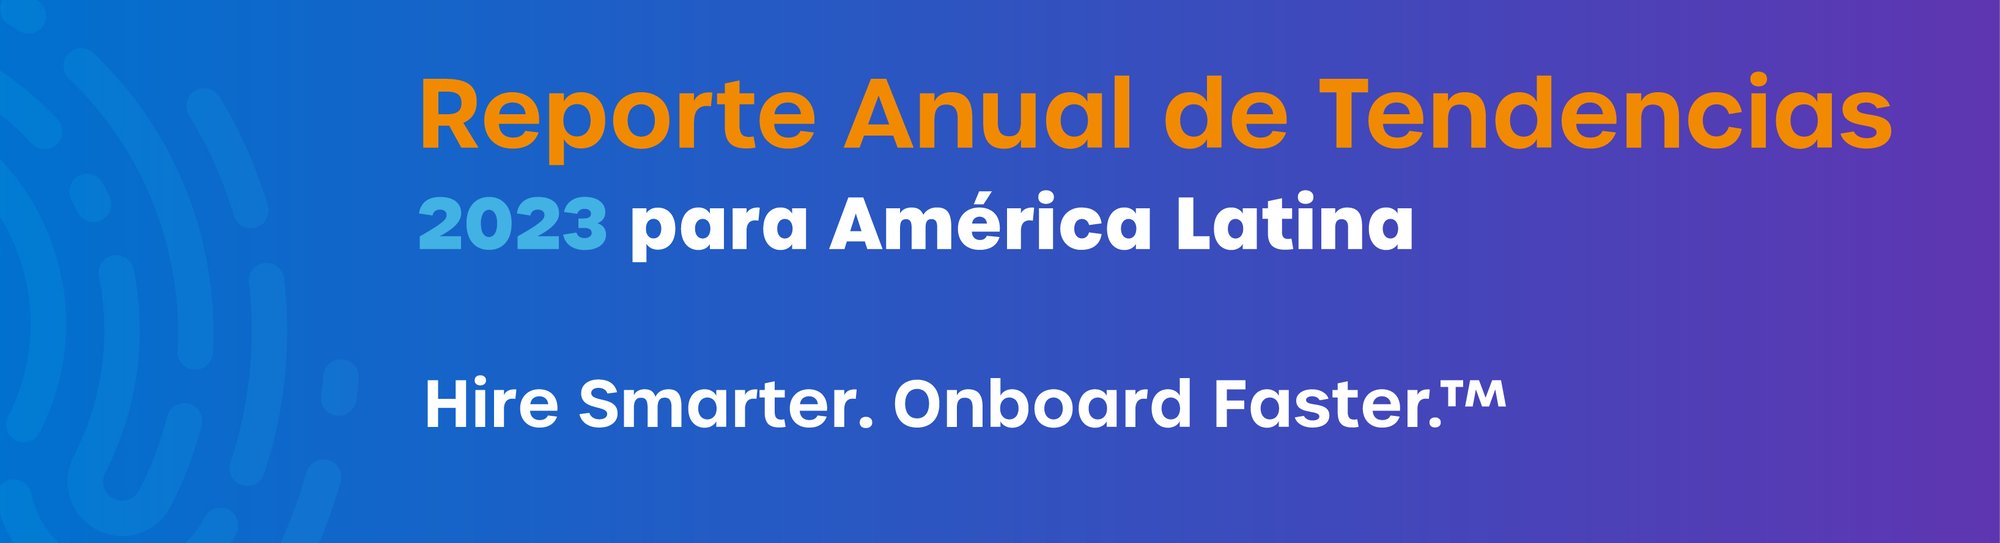 Header_LATAM Annual Trends Report 2023 Spanish